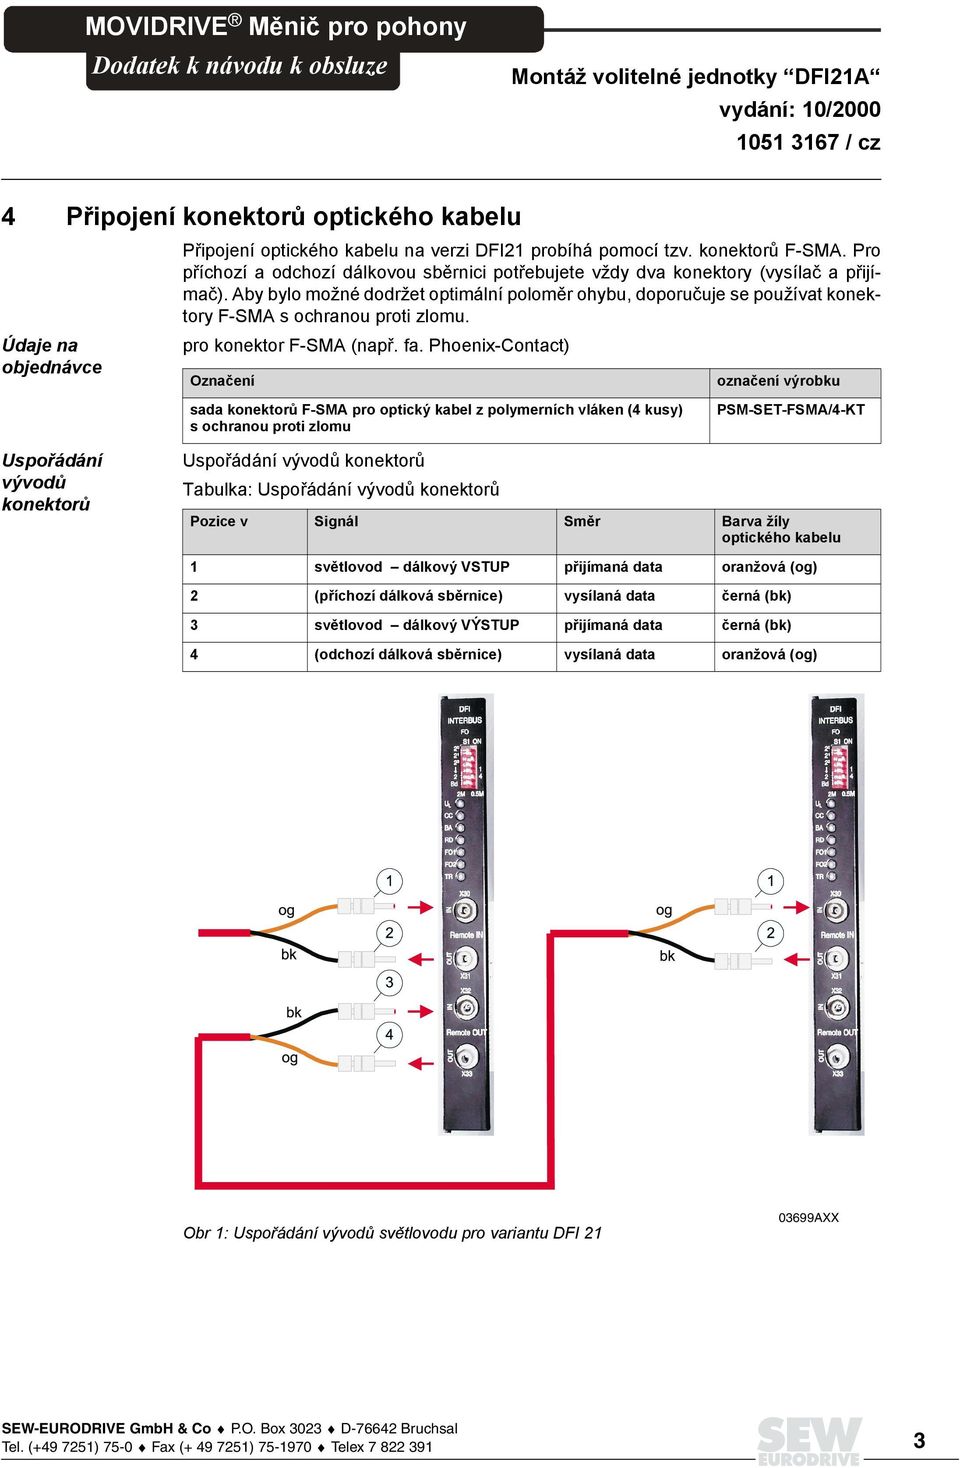 Phoenix-Contact) Ozna"ení ozna"ení výrobku sada konektor$ F-SMA pro optický kabel z polymerních vláken (4 kusy) s ochranou proti zlomu PSM-SET-FSMA/4-KT Uspo"ádání vývod# konektor# Uspo!